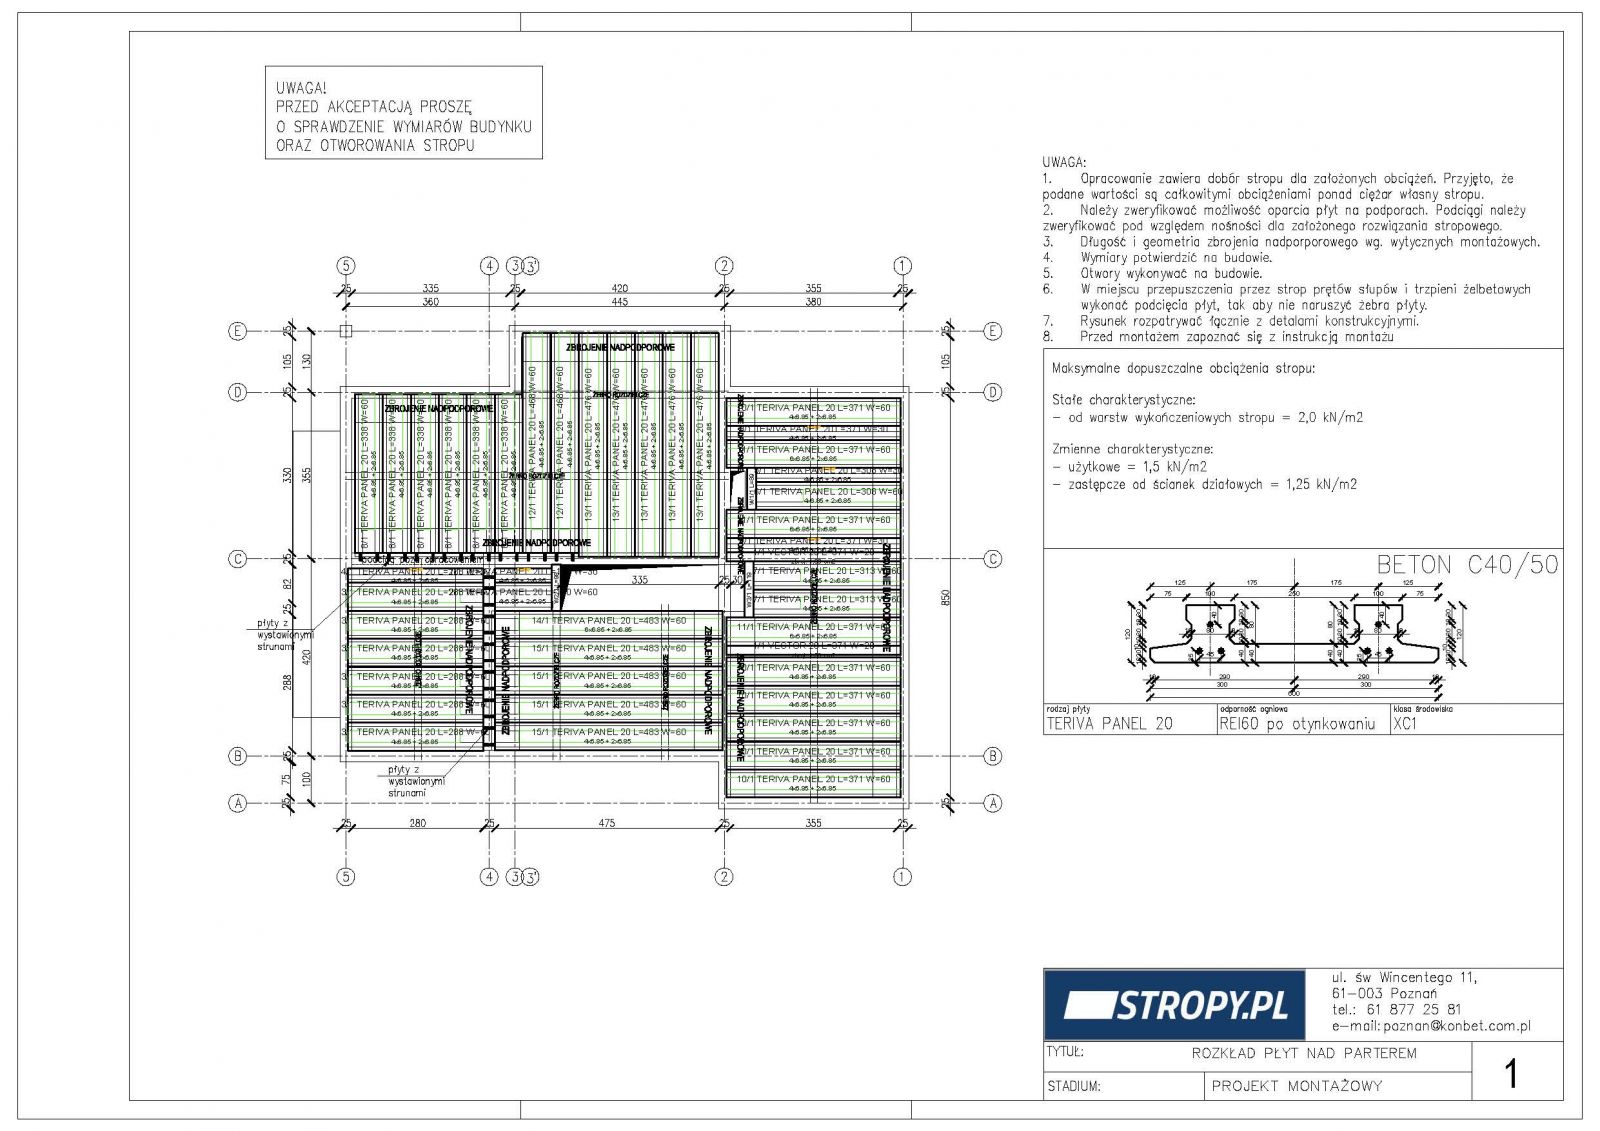 Schemat rozkładu prefabrykowanych płyt stropowych Teriva Panel i zbrojenia stropu (rys. KONBET)